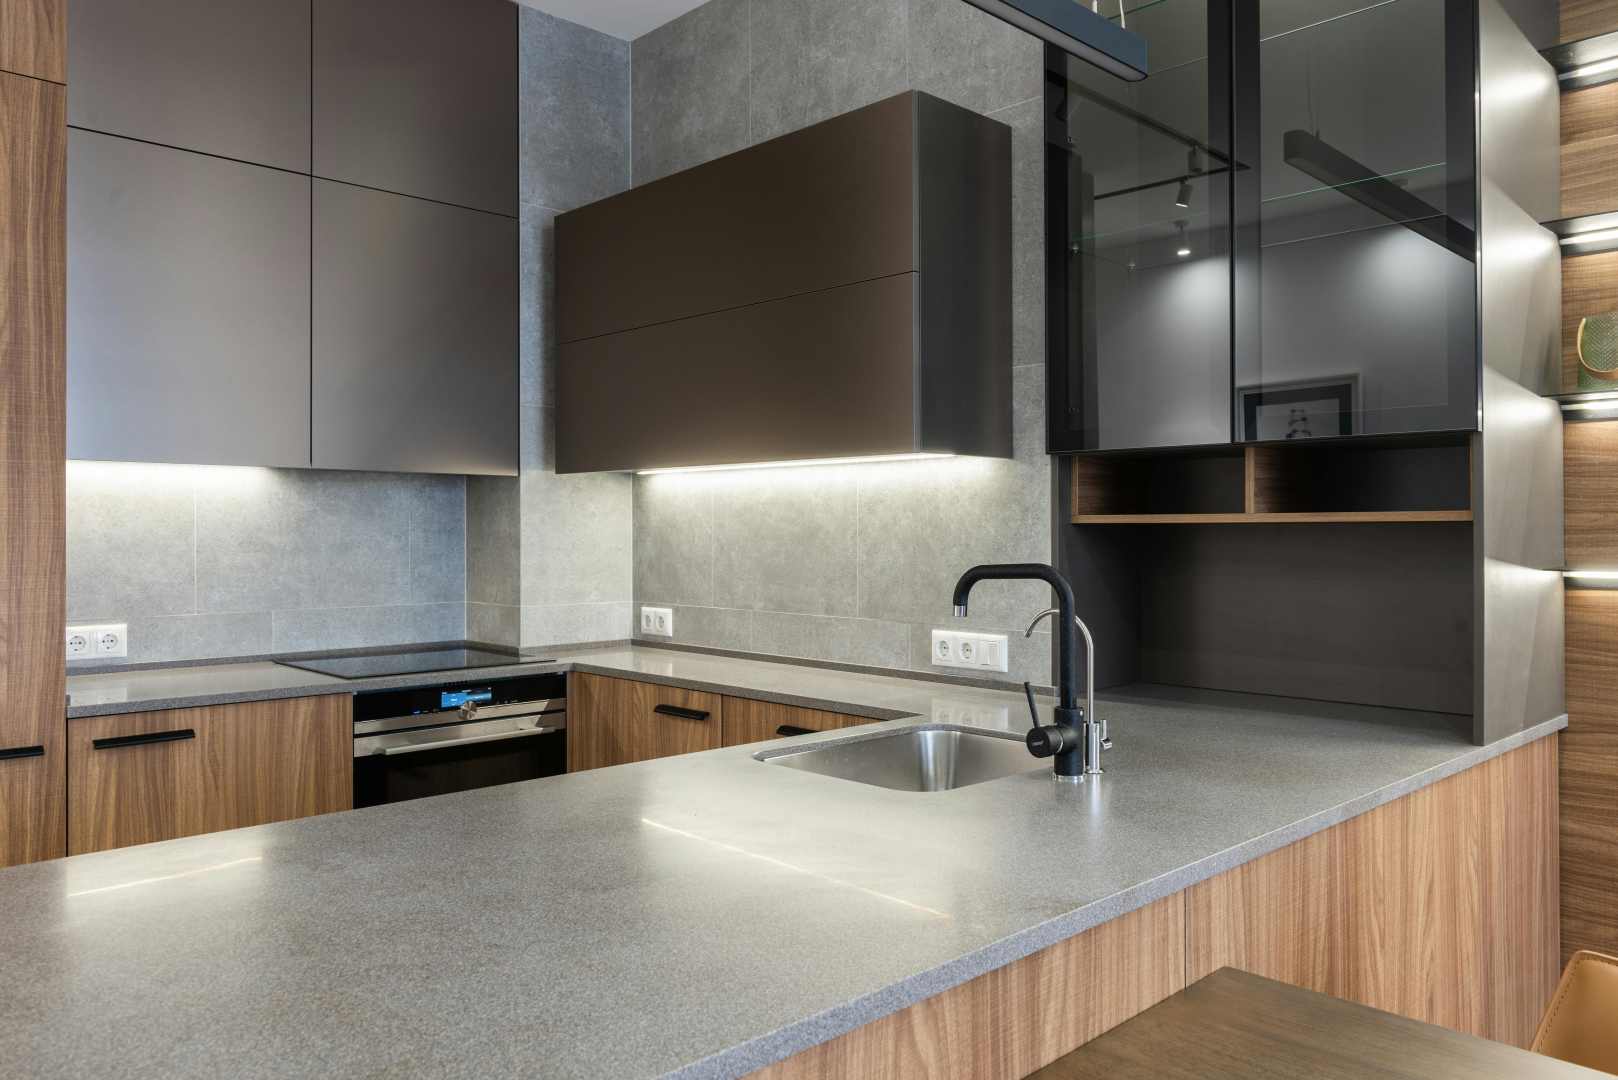 Grey kitchen worktops in a modern kitchen